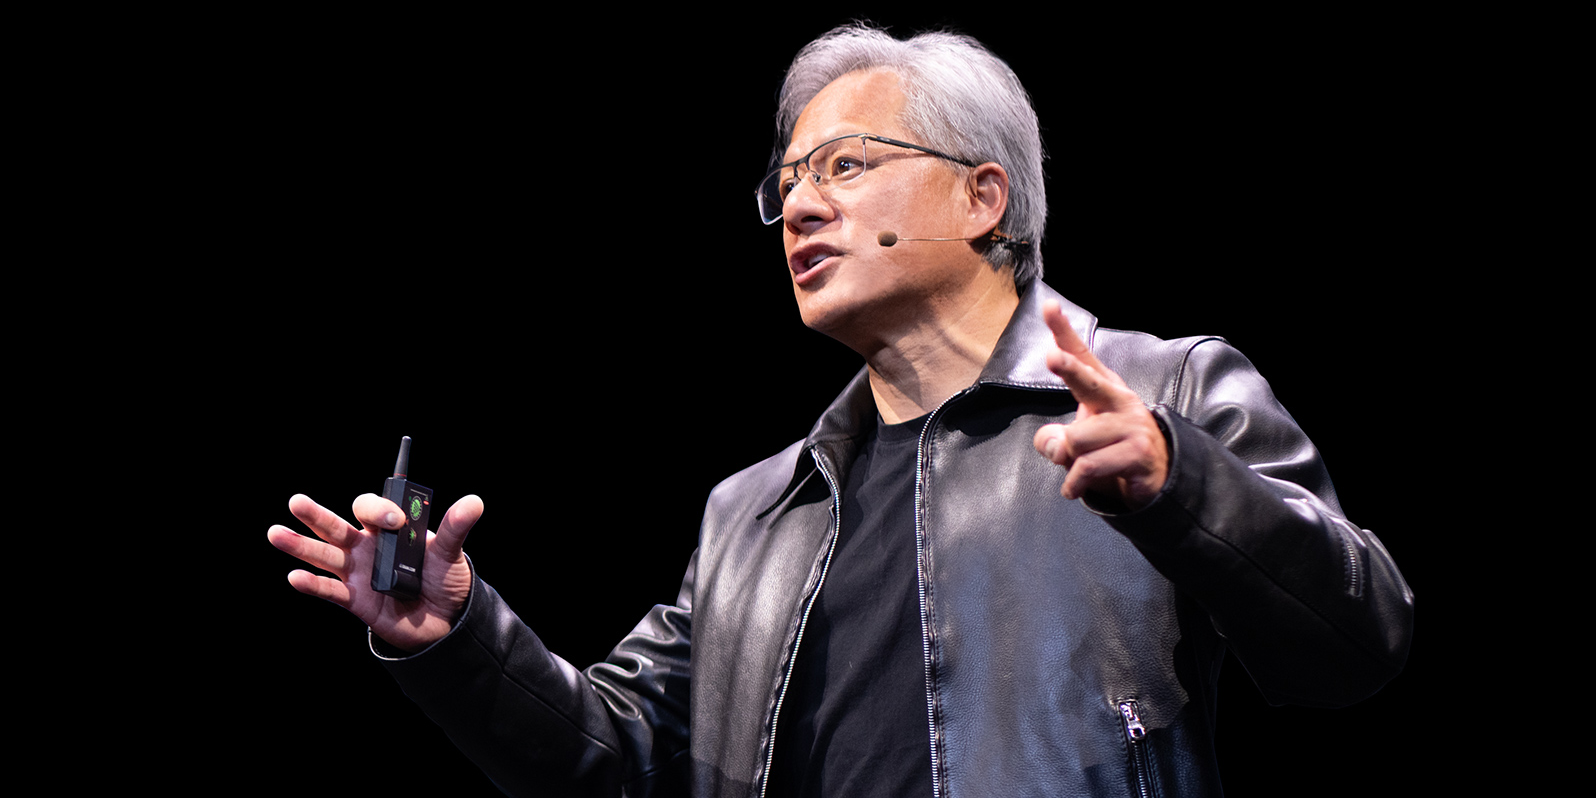 L'heure de gloire a sonné pour Jensen Huang, le fondateur de Nvidia